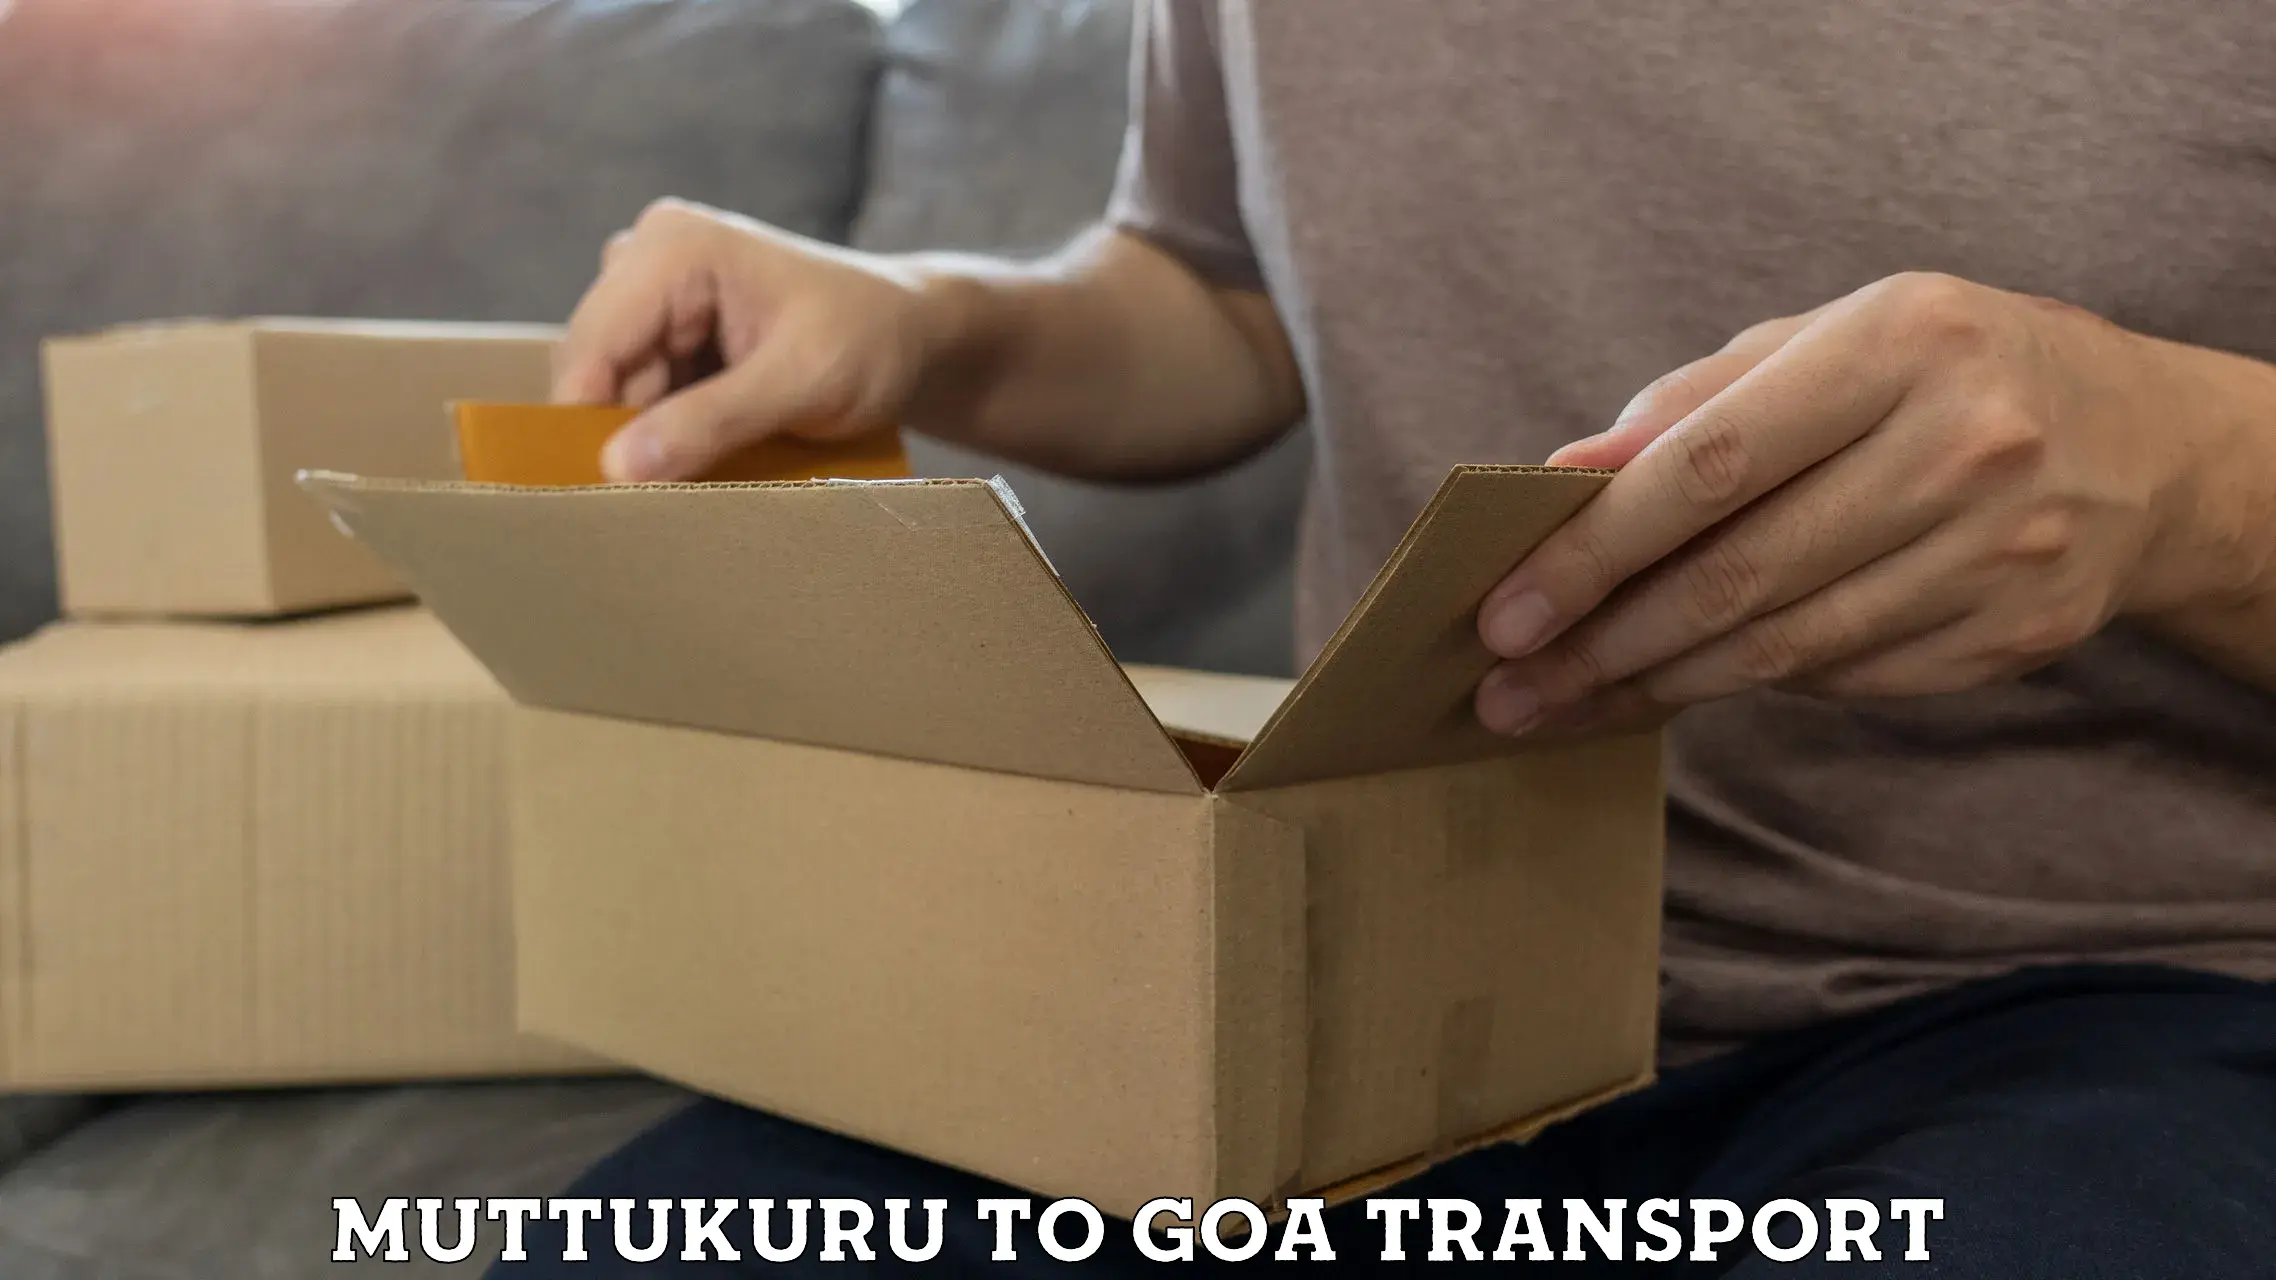 Furniture transport service in Muttukuru to Mormugao Port